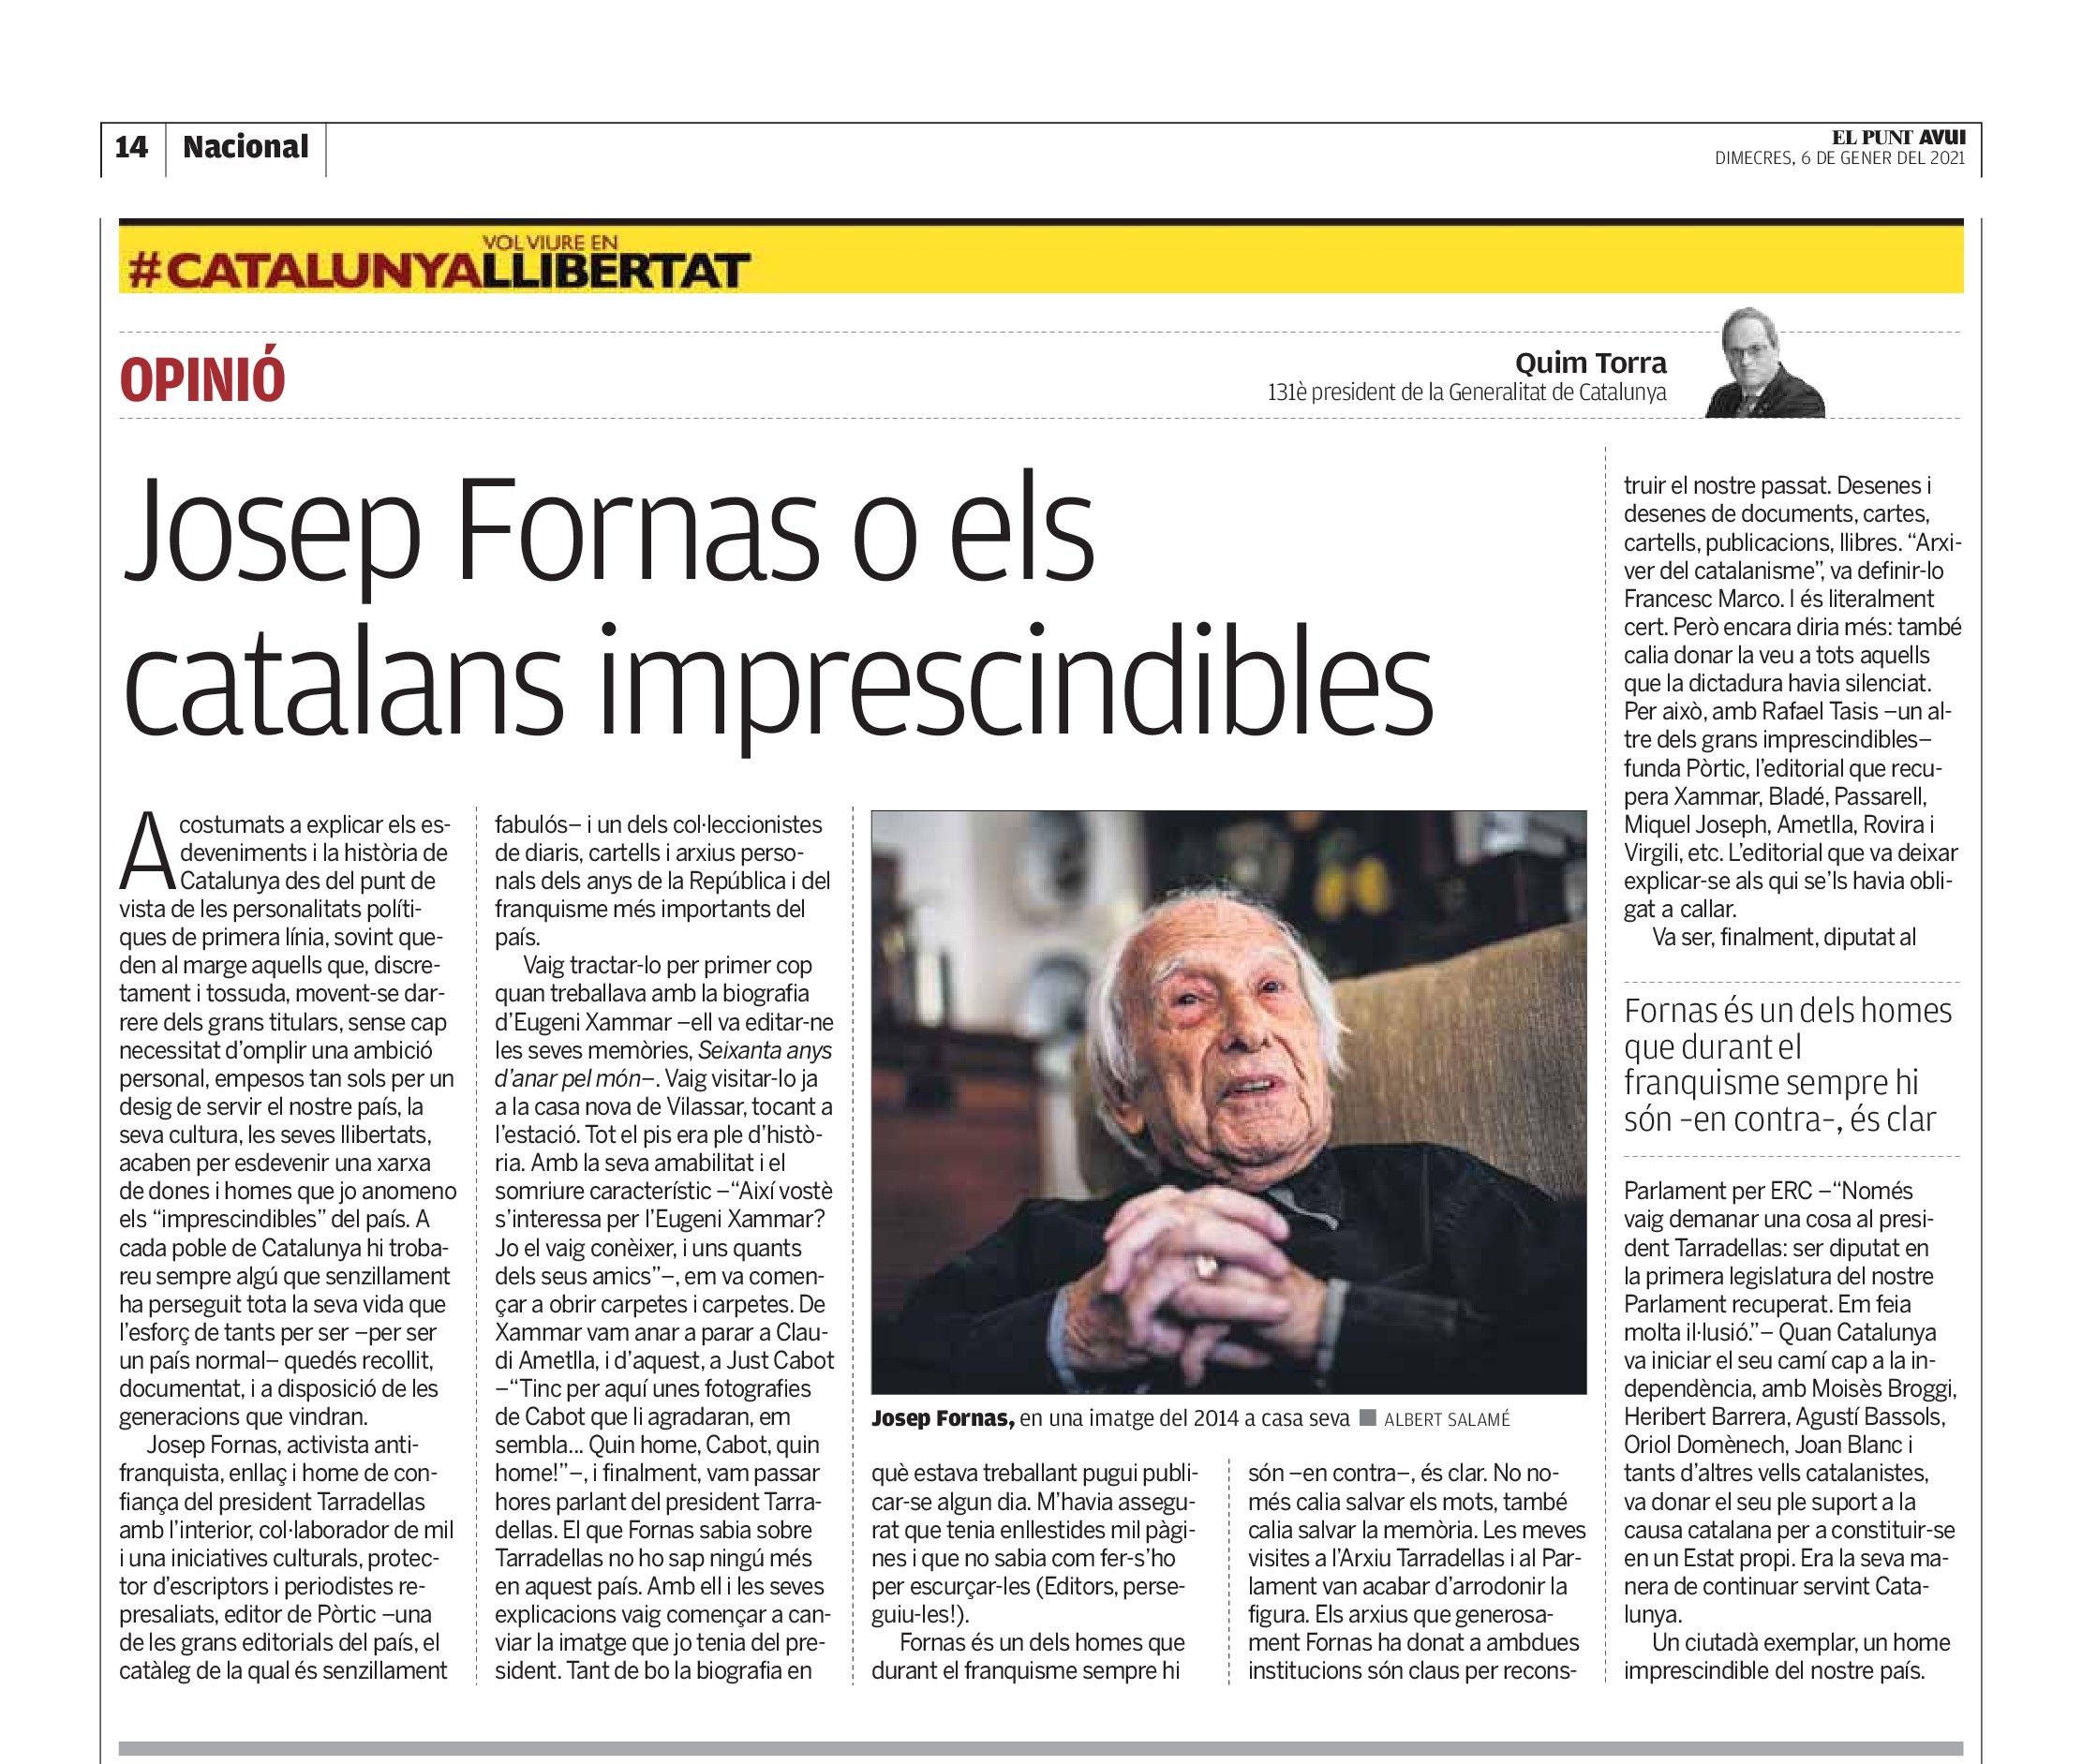 Josep Fornas o els catalans imprescindibles